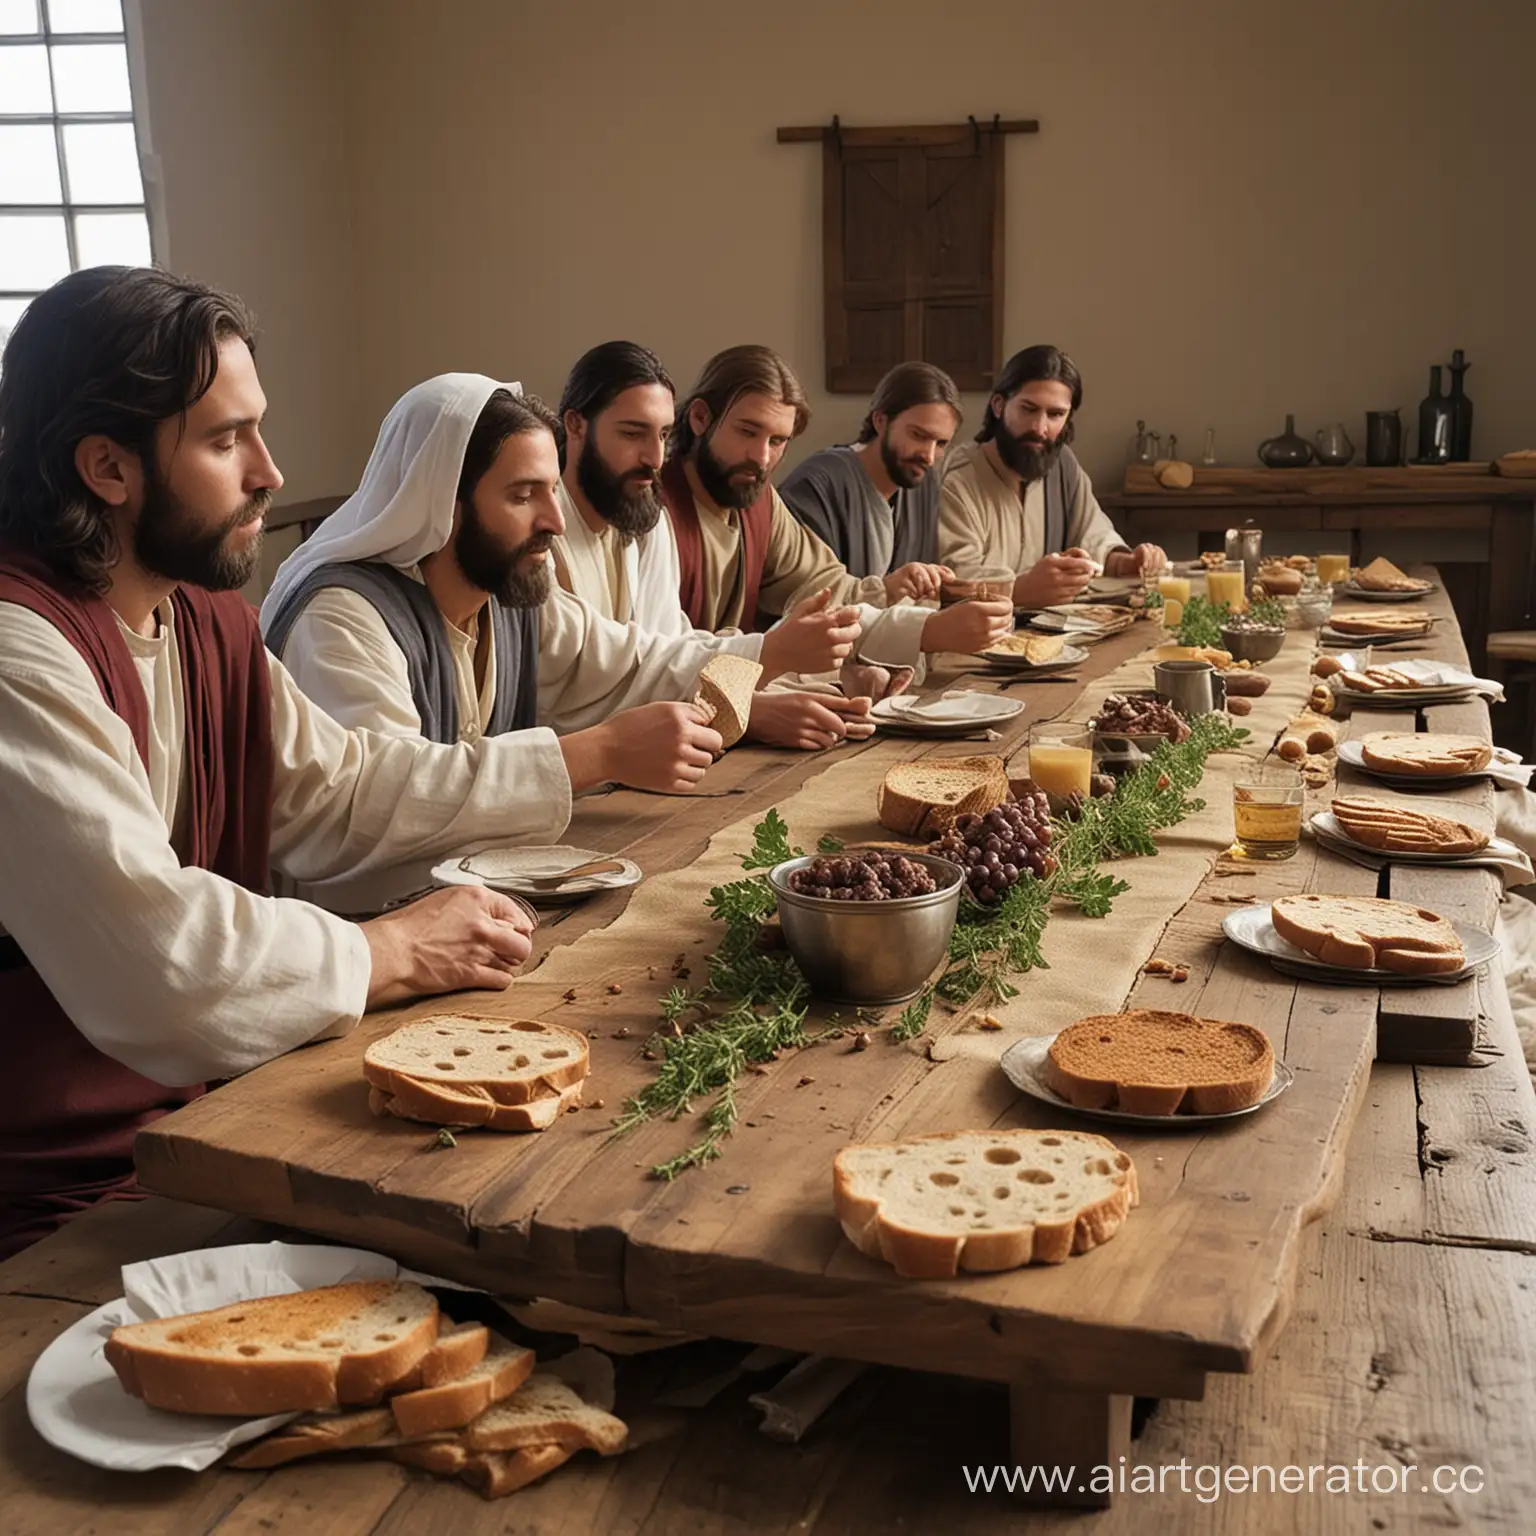 красивый Иисус вечеря Господня возлёг с учениками Иисус взяв хлеб благословил преломил дал ученикам не картинка обычный жизнь низкий стол